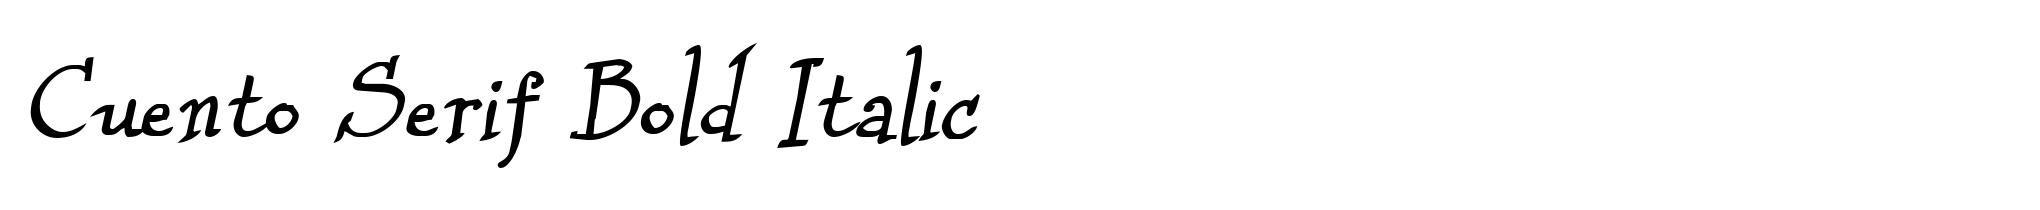 Cuento Serif Bold Italic image